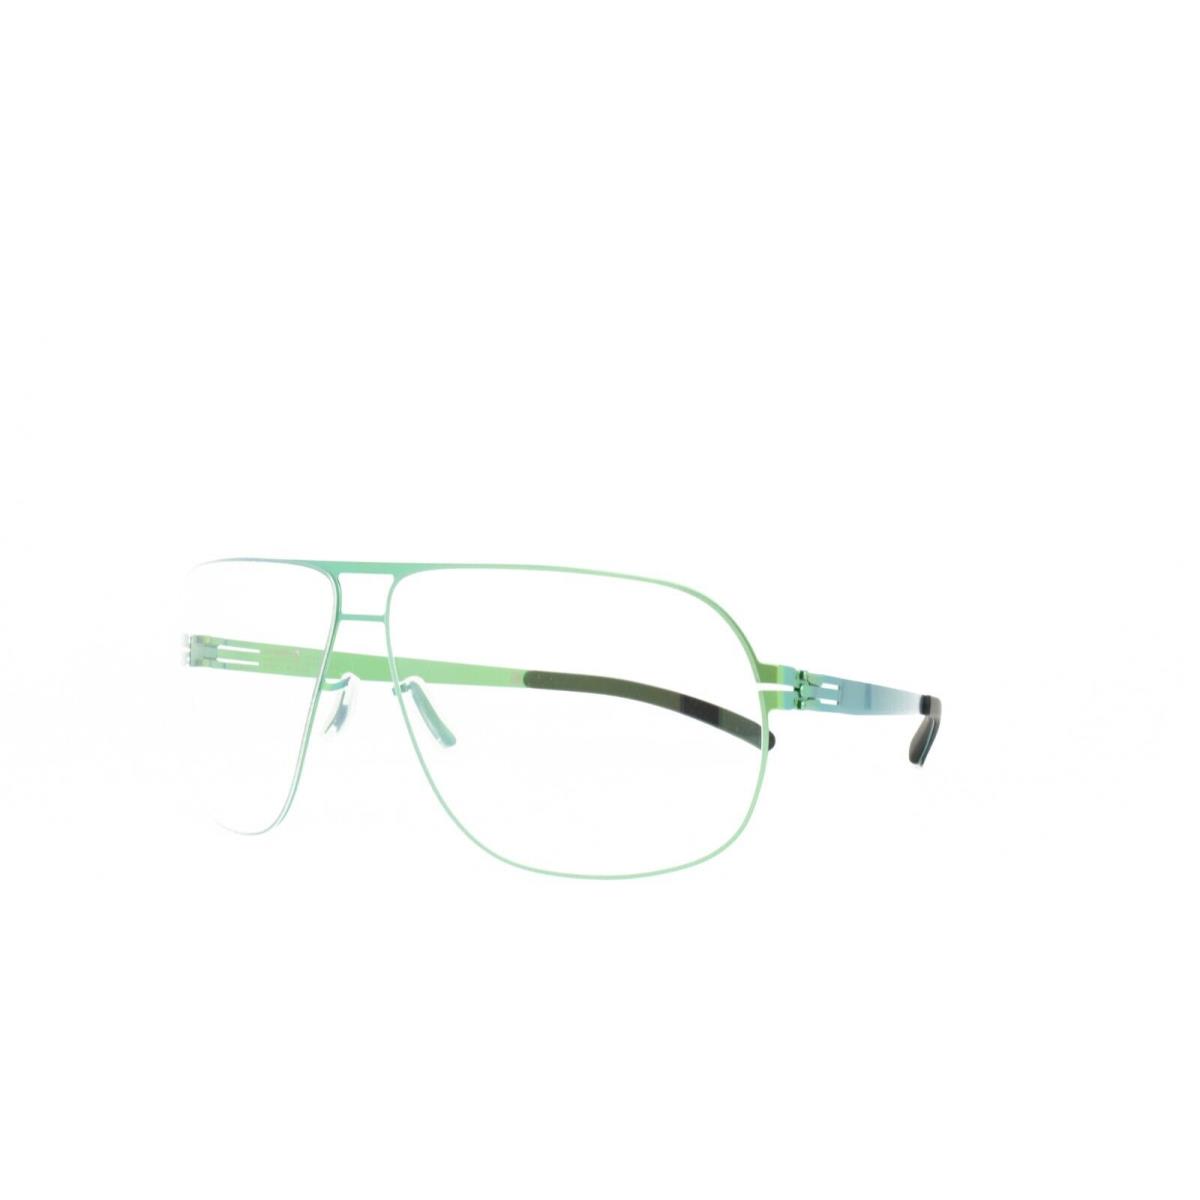 iC Berlin Eyeglasses X11 Krumme Lanke Electric Green 64-13-145